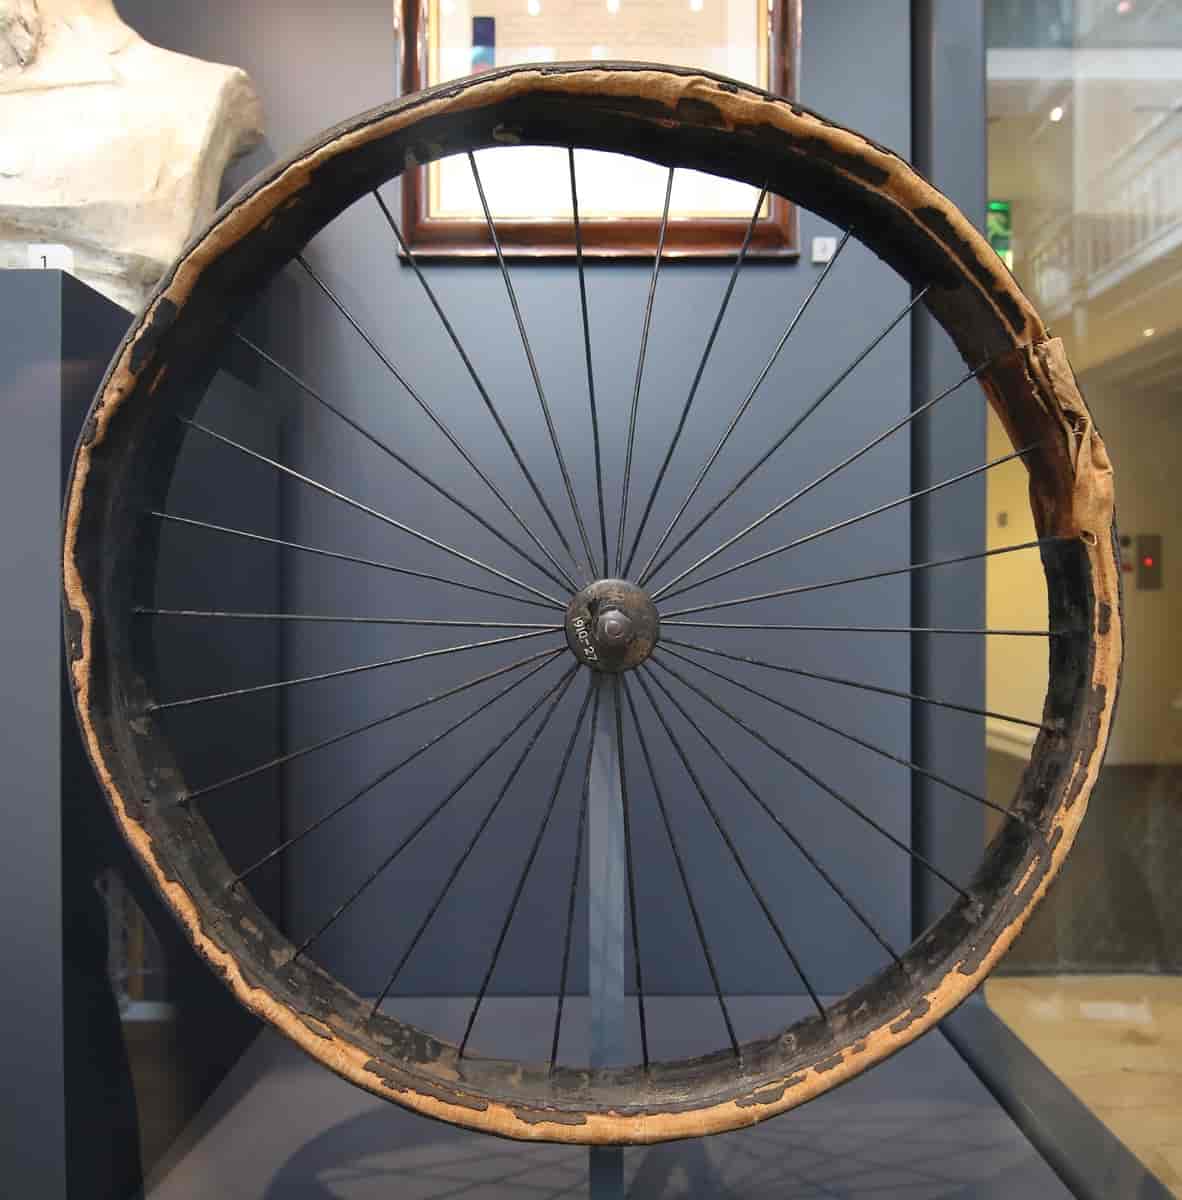 Den første sykkeldekket med luft, utstilt i National Museum of Scotland